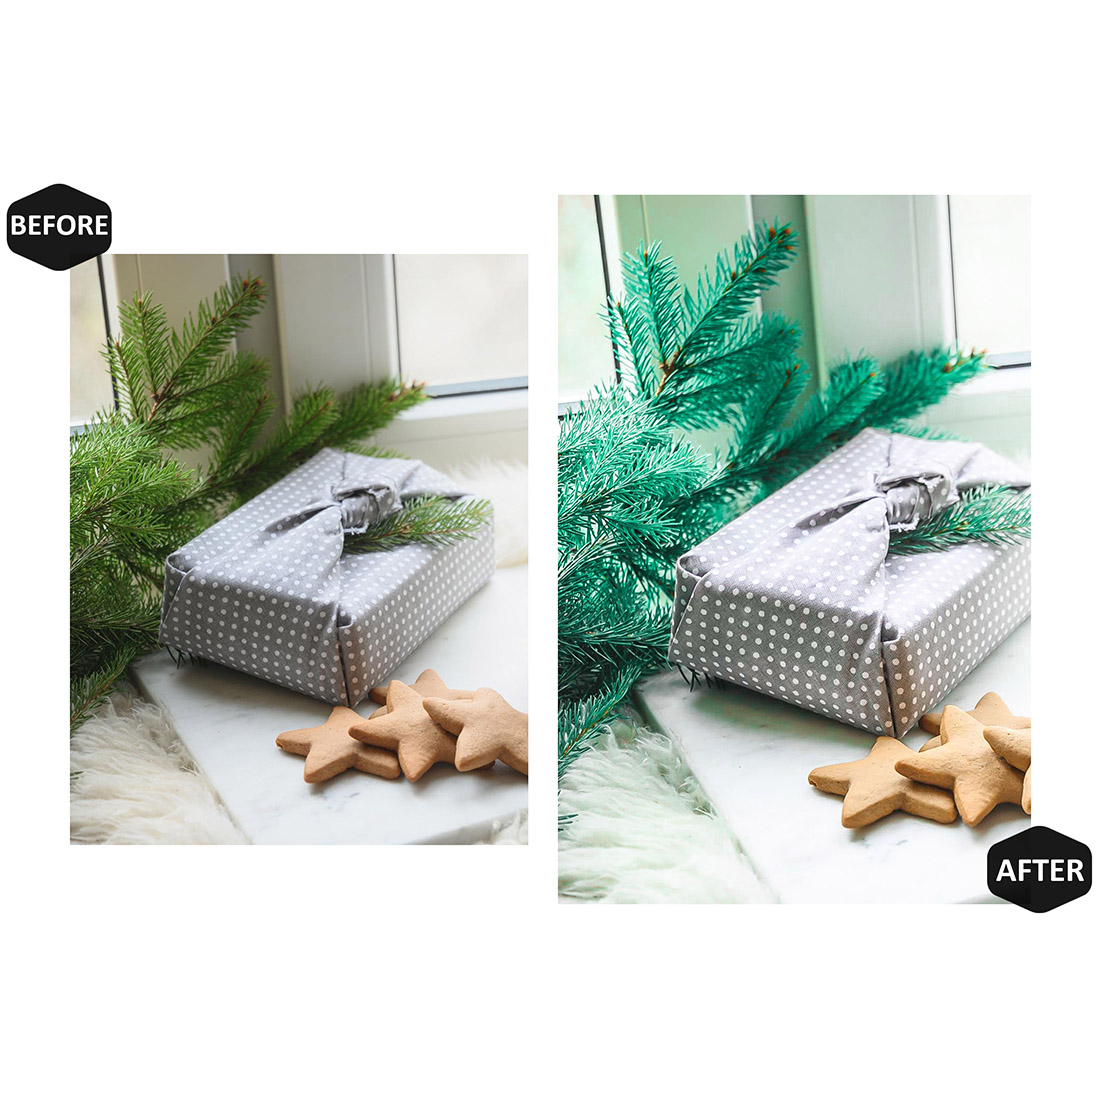 12 Alive Xmas Lightroom Presets, Christmas Mobile Preset, December Holiday Desktop LR Filter Scheme Lifestyle Theme For Portrait, Instagram preview image.